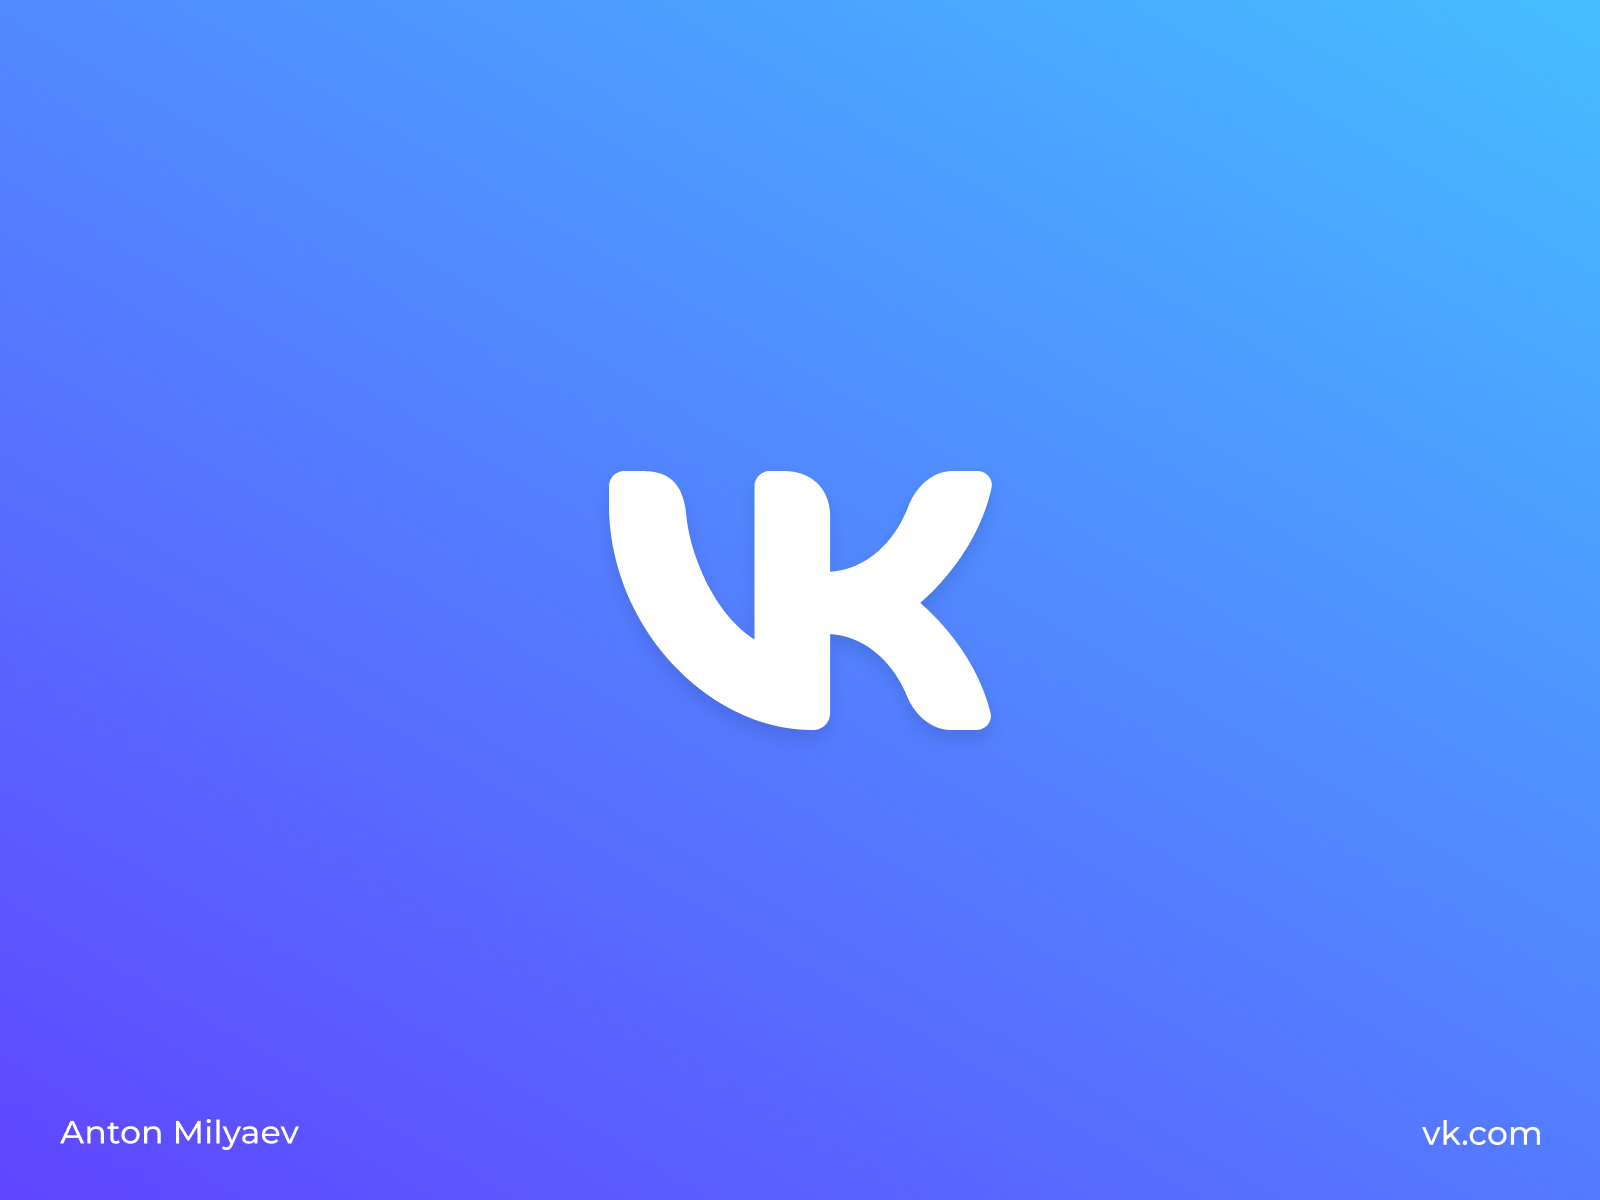 Web vk. ВК. ВК лого. Значок ВК новый. ВКОНТАКТЕ логотип 2021.